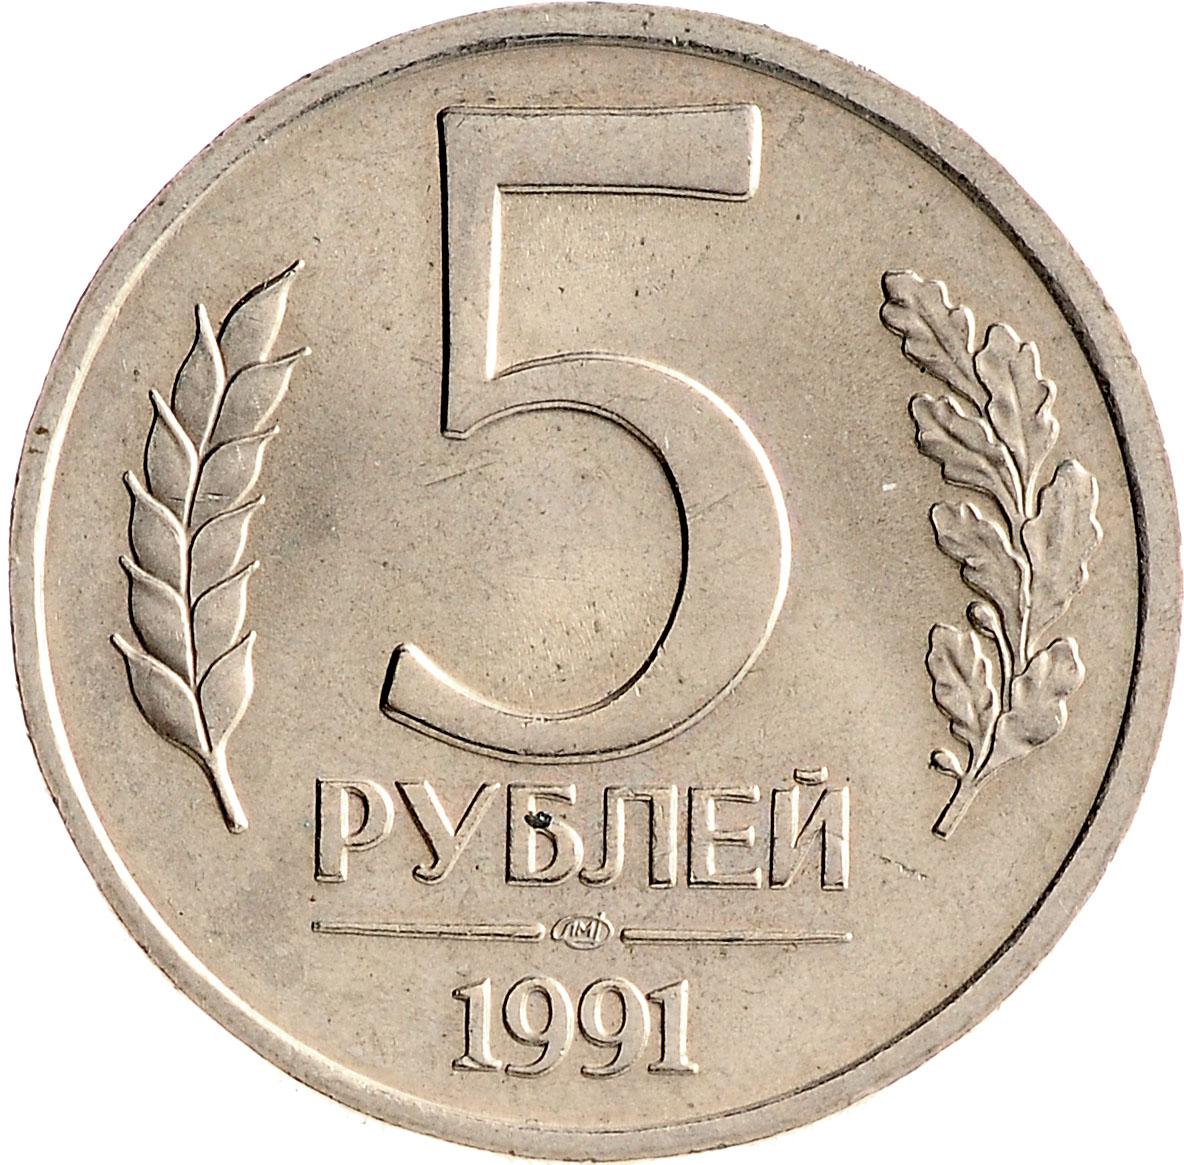 5 рубль 1991 года цена стоимость. 5 Рублей 1991 ММД ЛМД. 5 Рублей 1991 ММД или ЛМД. Монета 5 рублей 1991 ЛМД. 5 Рублей 1991 года ЛМД.